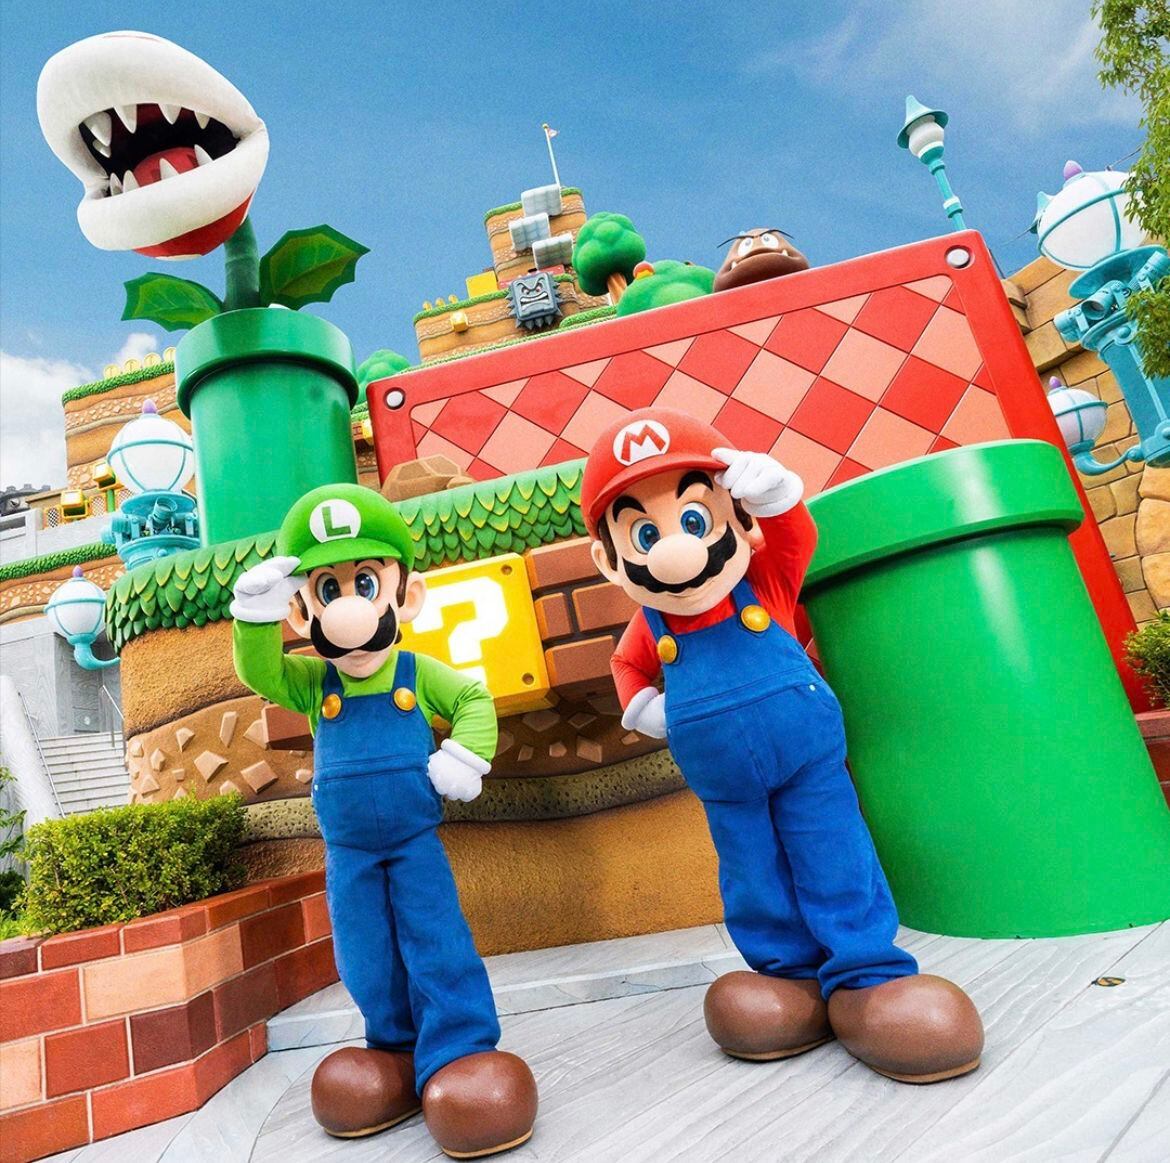 El Super Nintendo World cuenta con la presencia de Mario, Luigi y Peach. (Foto: Instagram / @unistudios)